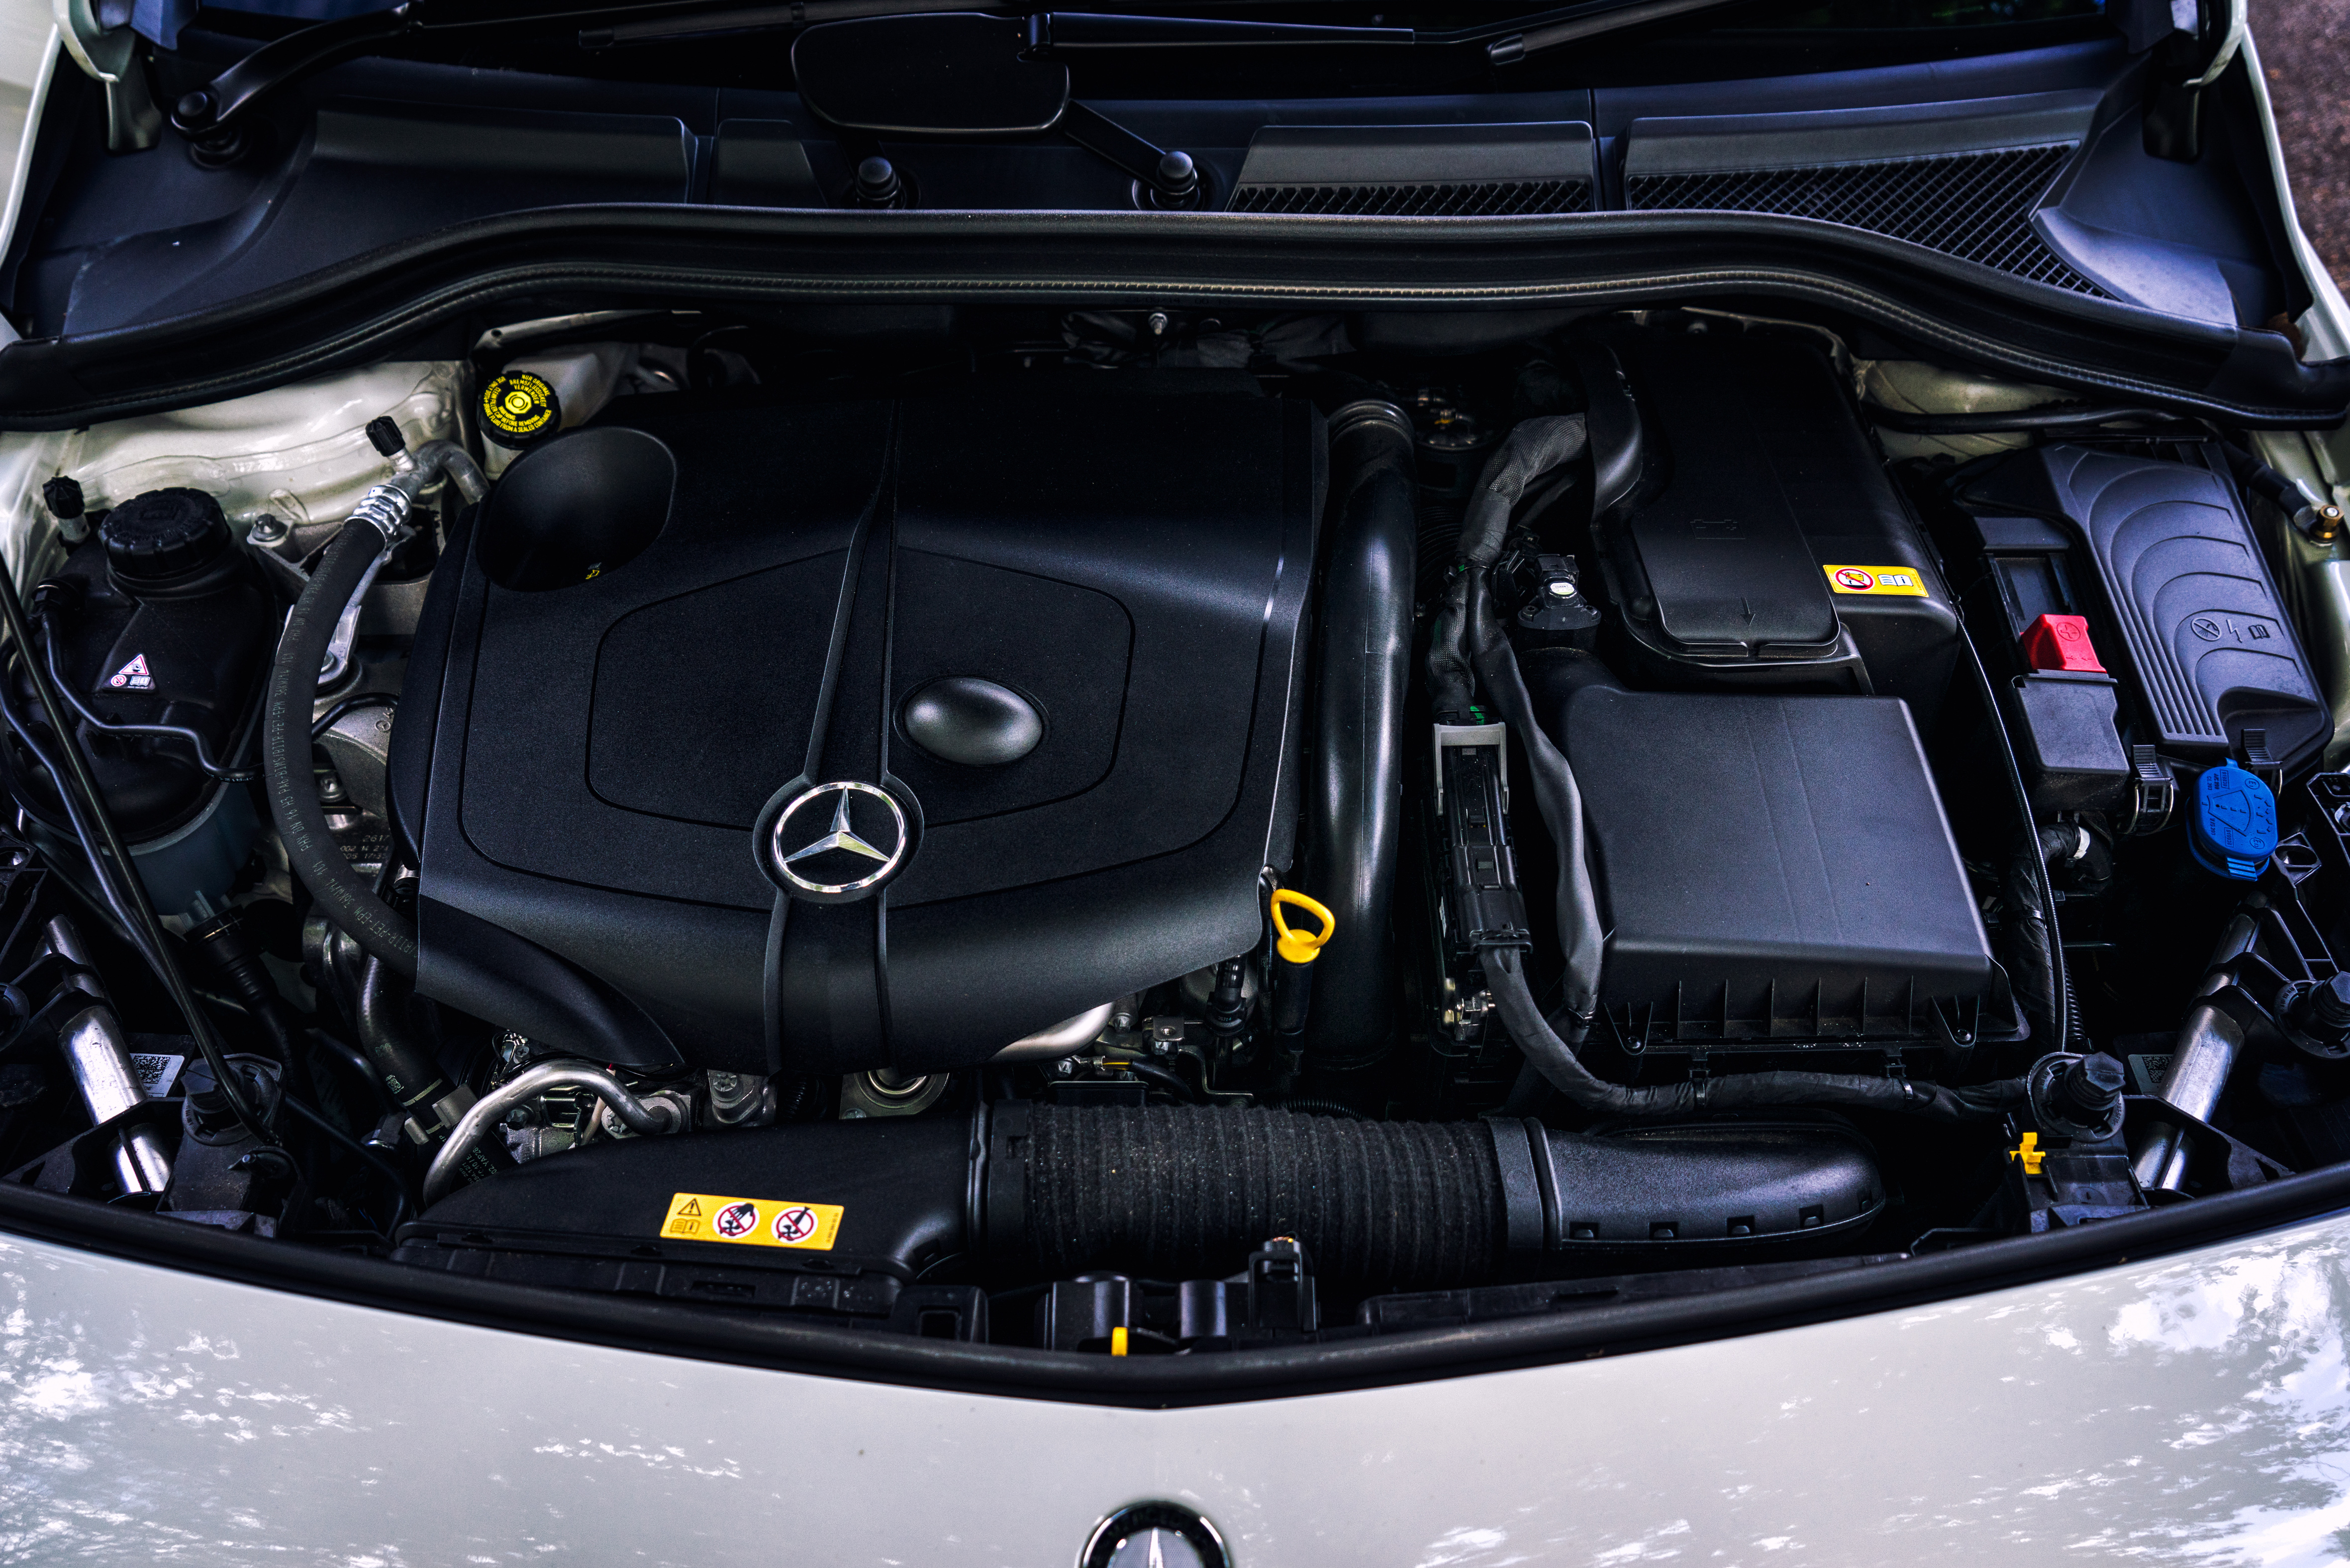 Mercedes-Benz B-Class engine bay